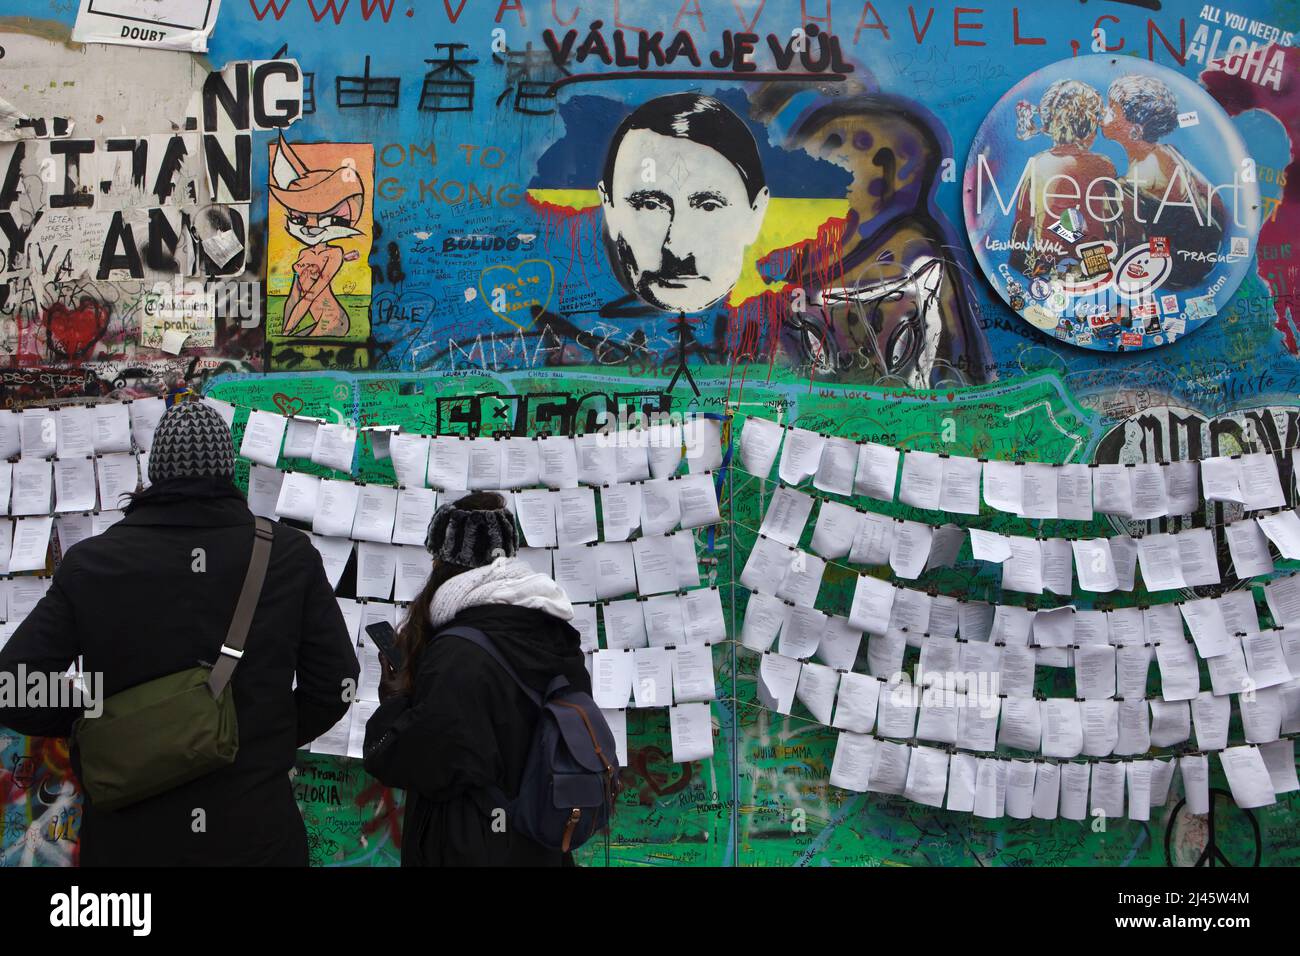 il presidente russo Vladimir Putin ha raffigurato il muro di Lennon (Lennonova zeď) a Praga, Repubblica Ceca. Il presidente Vladimir Putin è raffigurato con i caratteristici baffi da taglio e da spazzolino di Adolf Hitler collocati sulla sanguinosa mappa dell'Ucraina per protestare contro l'invasione russa dell'Ucraina nel 2022. L'iscrizione ceca sul capo di Putin 'Válka je vůl' (letterario significa: La guerra è un bue) è una linea di una canzone popolare della rock band ceca 'Synkopy 61'. I turisti nella foto del 2 aprile 2022 leggono i testi antguerra posti accanto al Muro di Lennon. Foto Stock